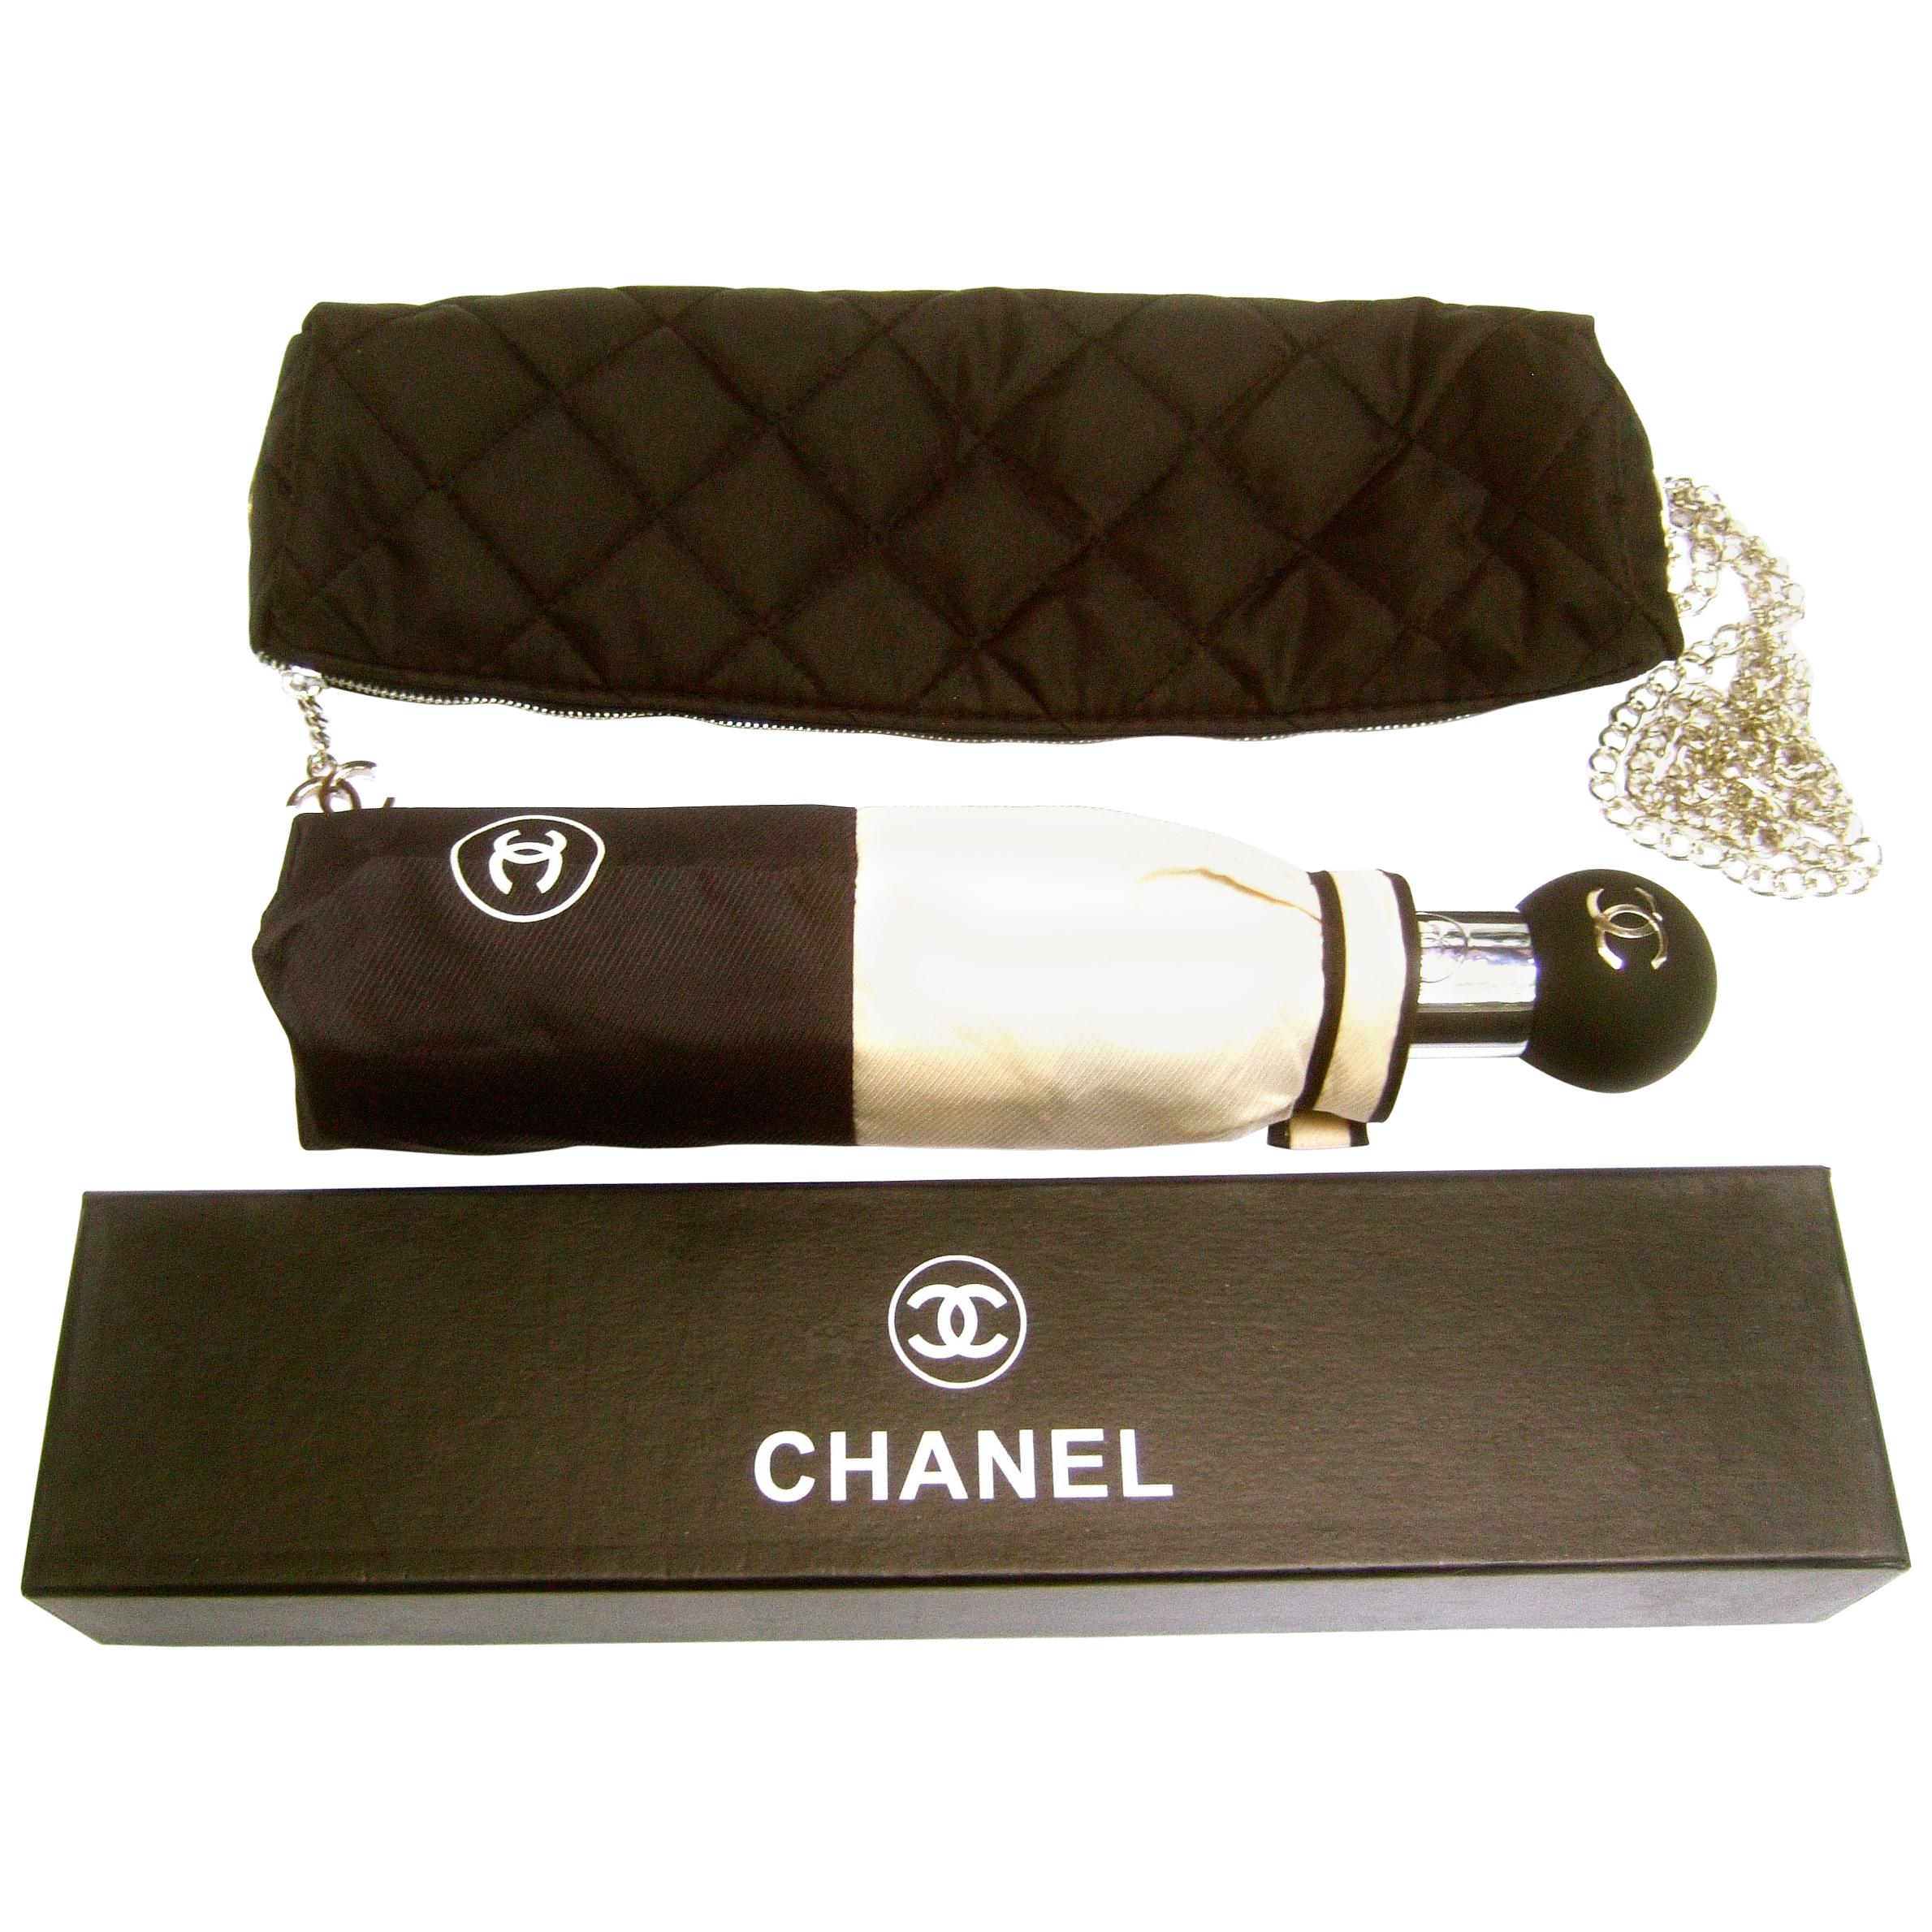 Chanel Tan & Black Nylon Umbrella in Chanel Box Circa 21st C 